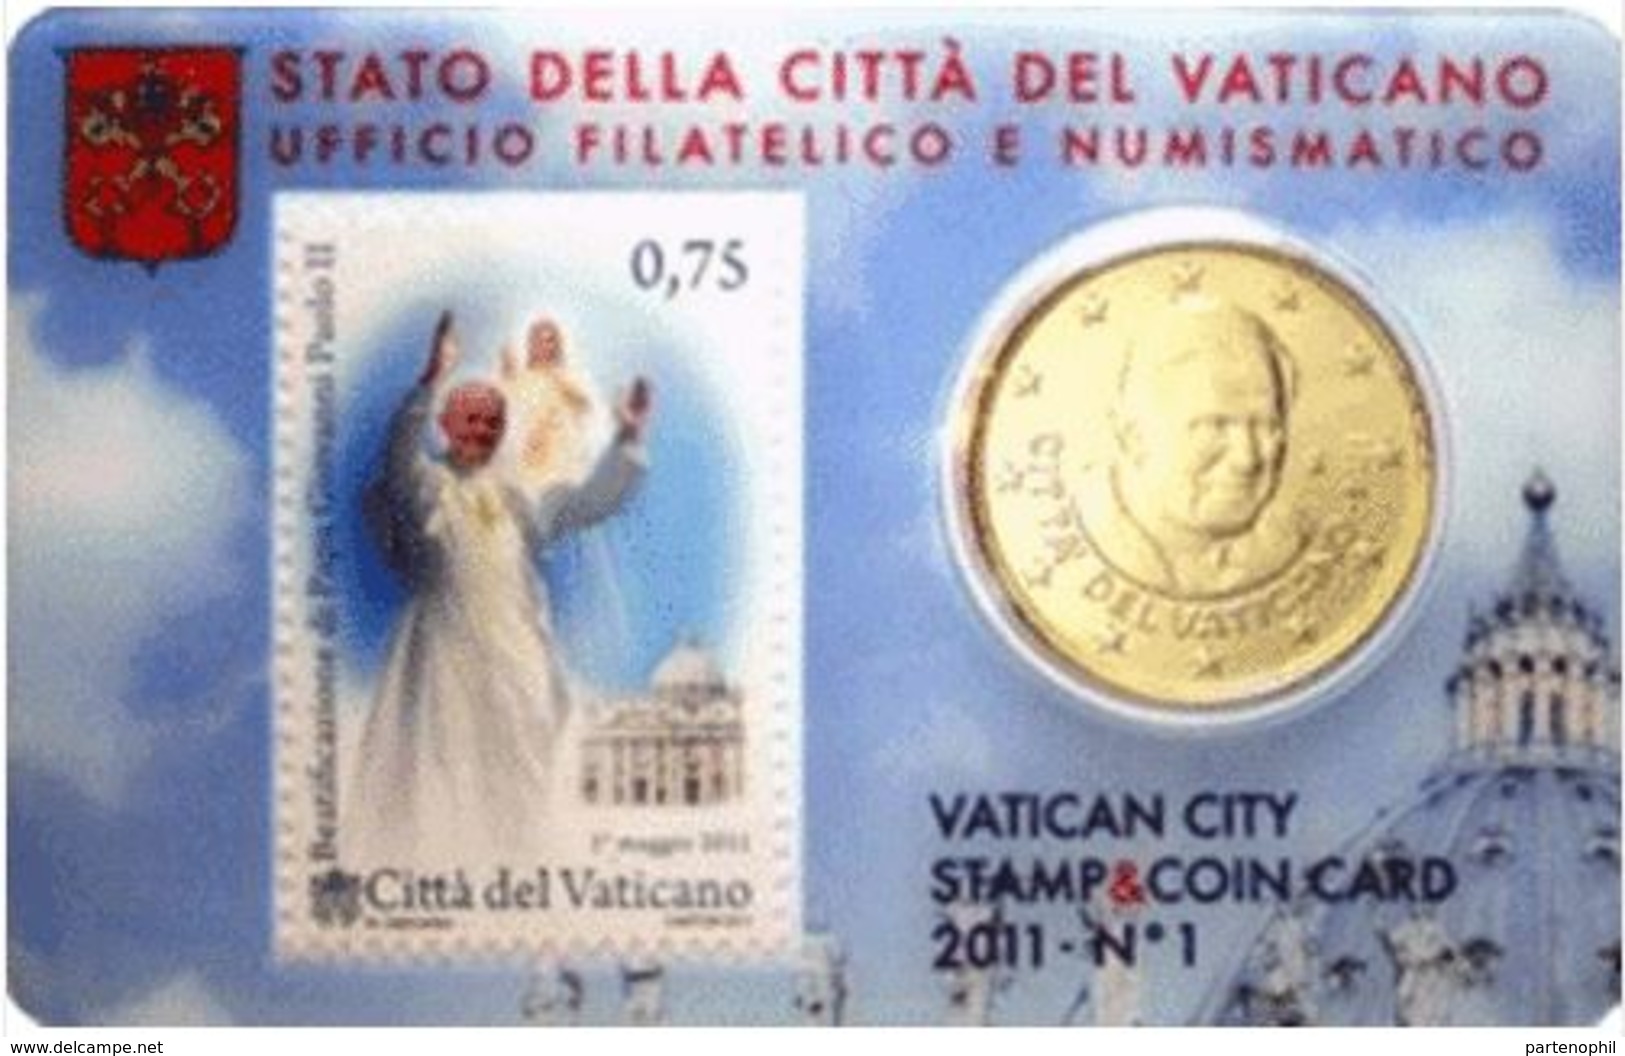 VATICANO-Stamp & Coin Card 2011 BEATIFICAZIONE DI GIOVANNI PAOLO II - Vaticano